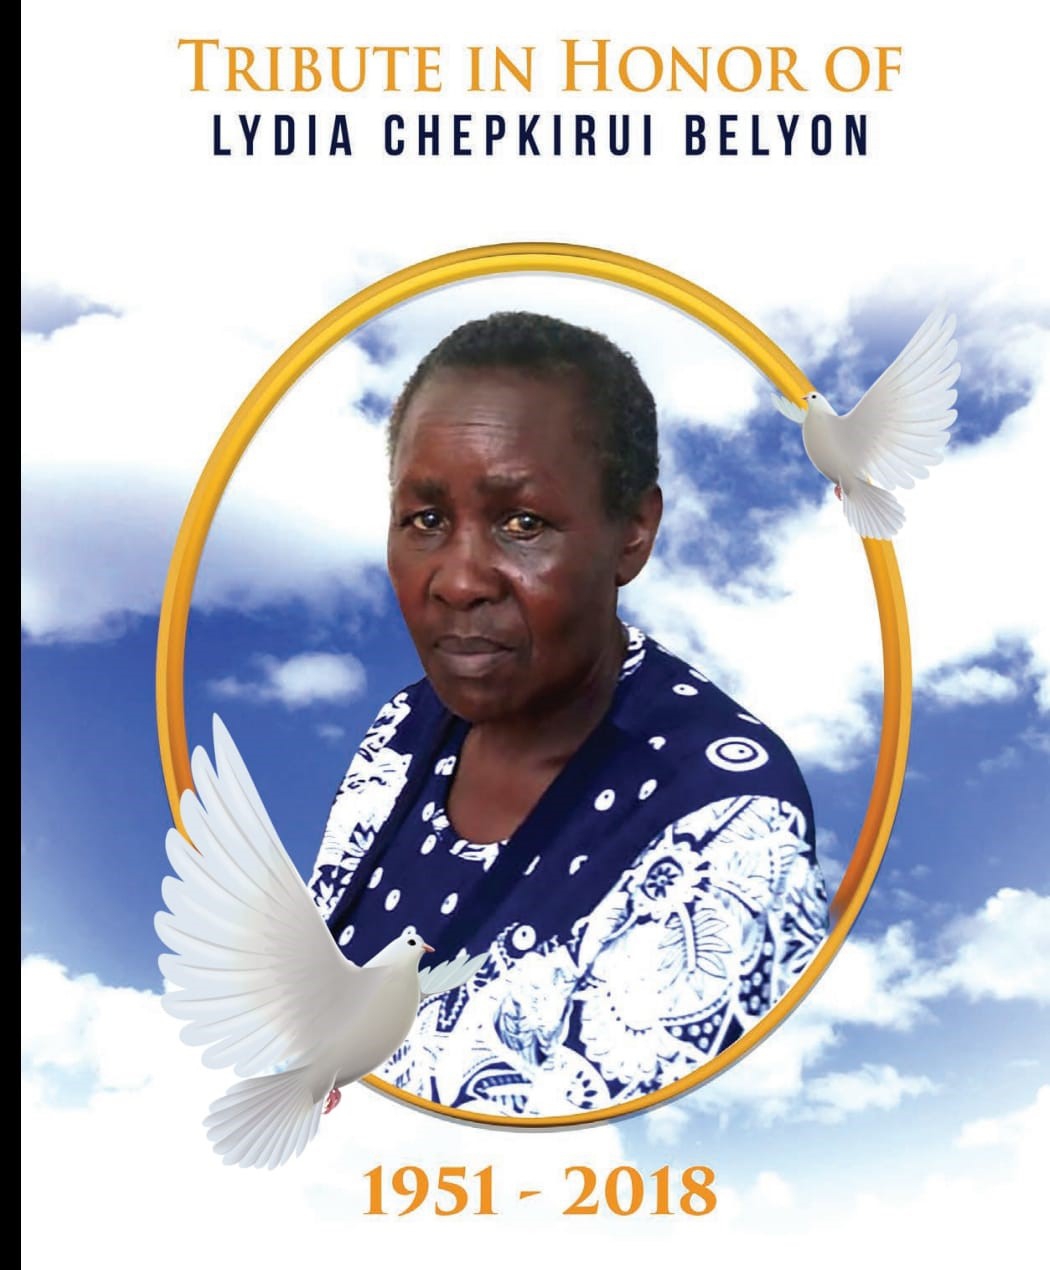 Lydia Chepkirui Belyon: A loving, kind and wonderful woman